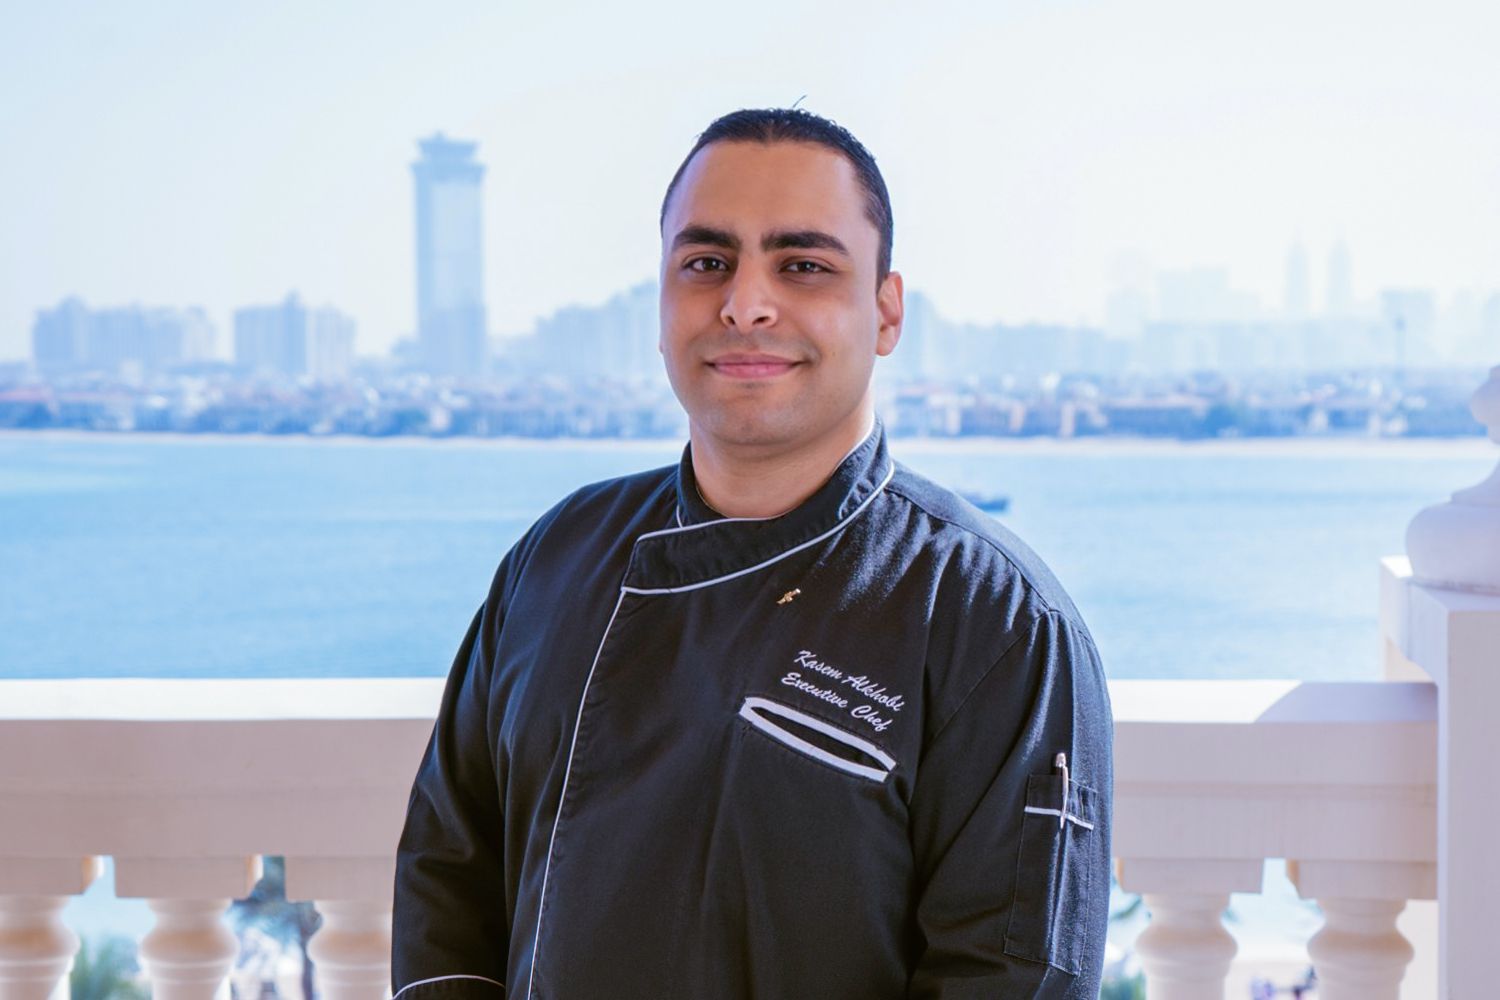 Chef Kasem AlKhobi